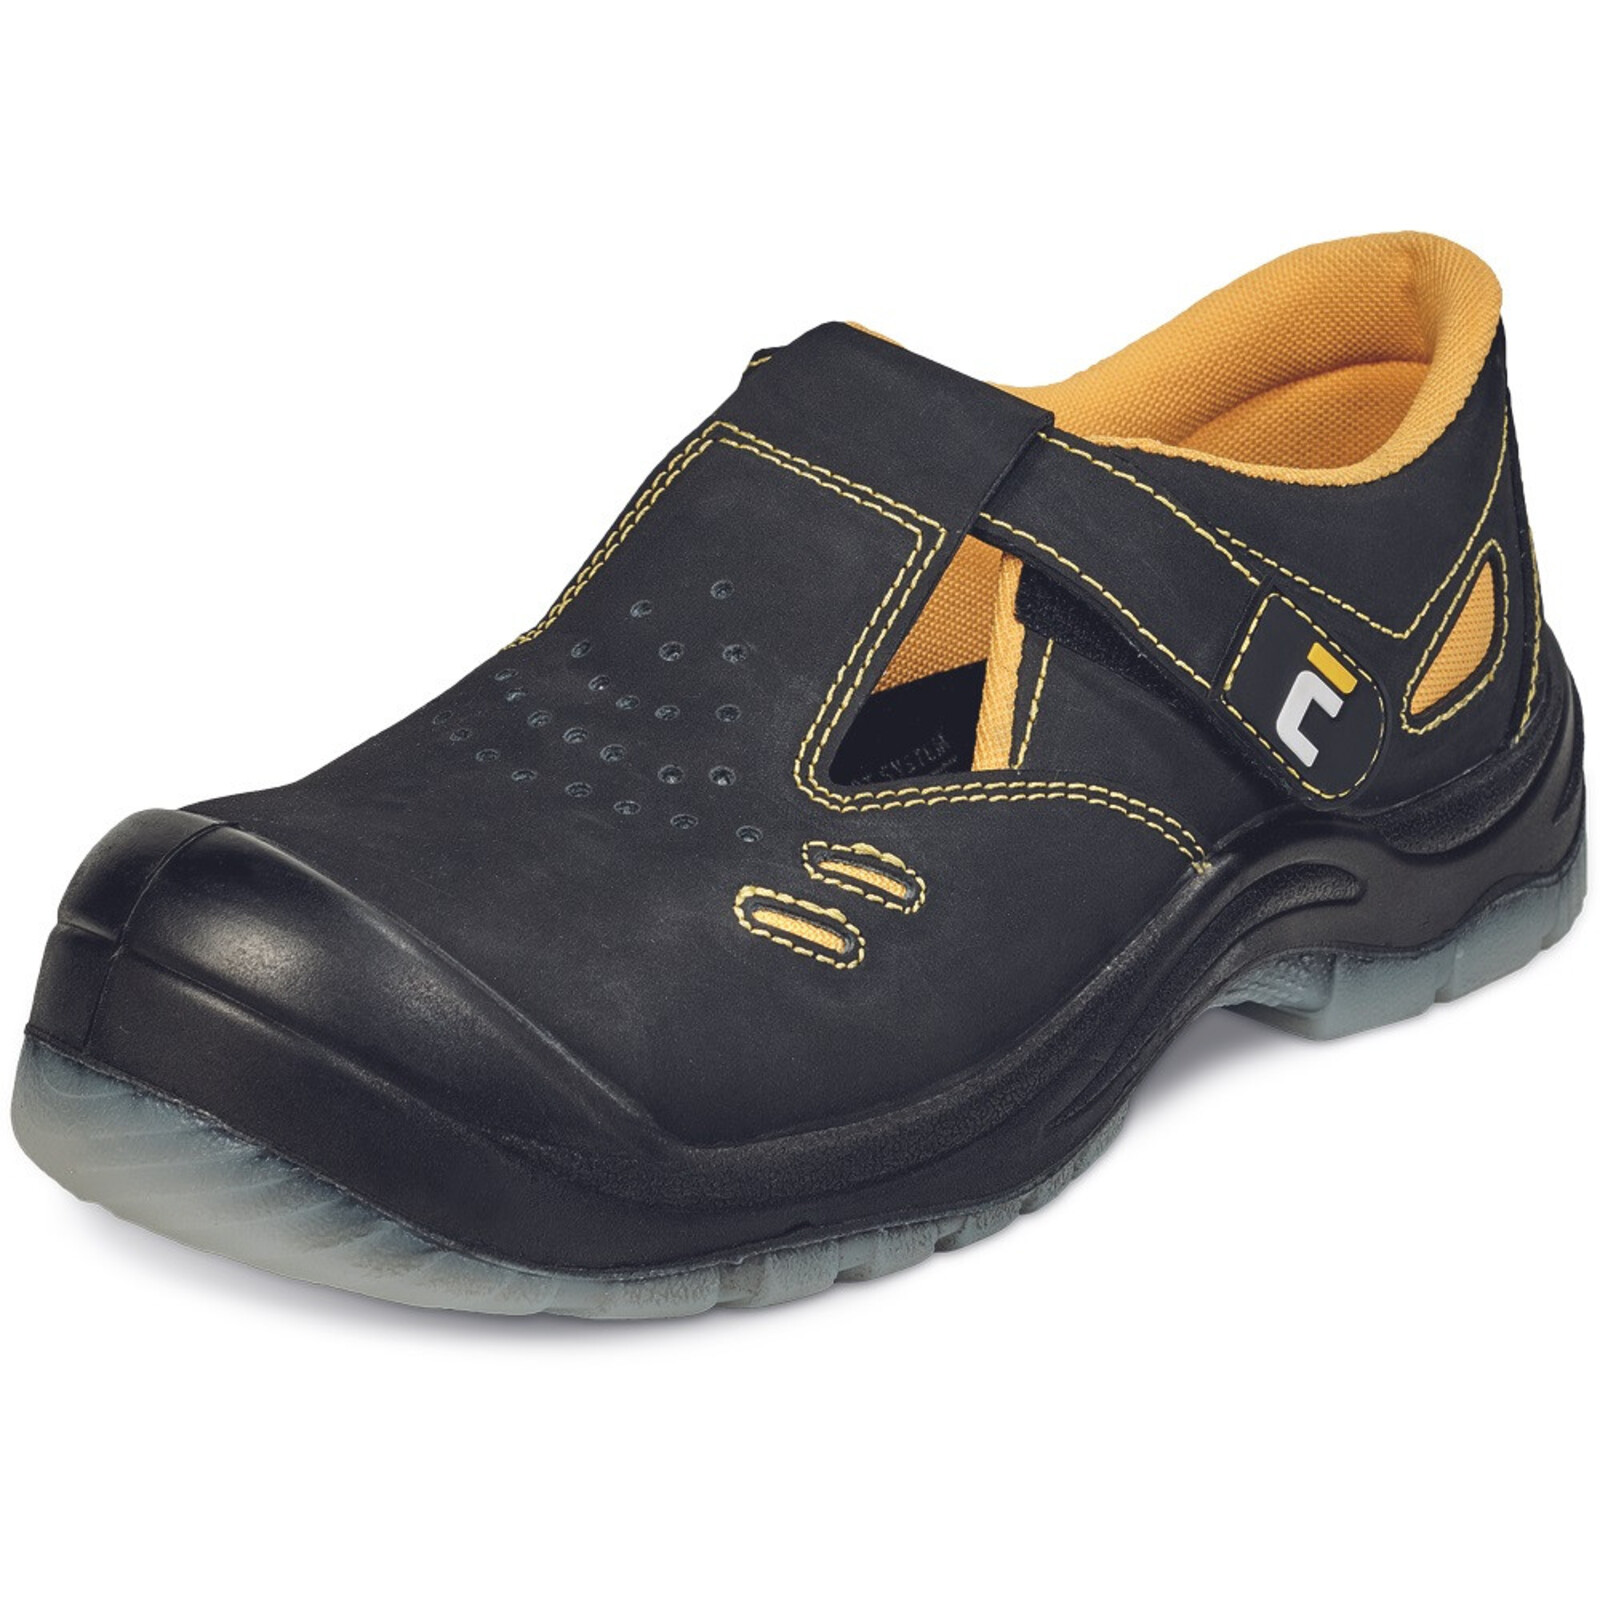 Bezpečnostné sandále Cerva BK TPU MF S1P SRC - veľkosť: 36, farba: čierna/žltá